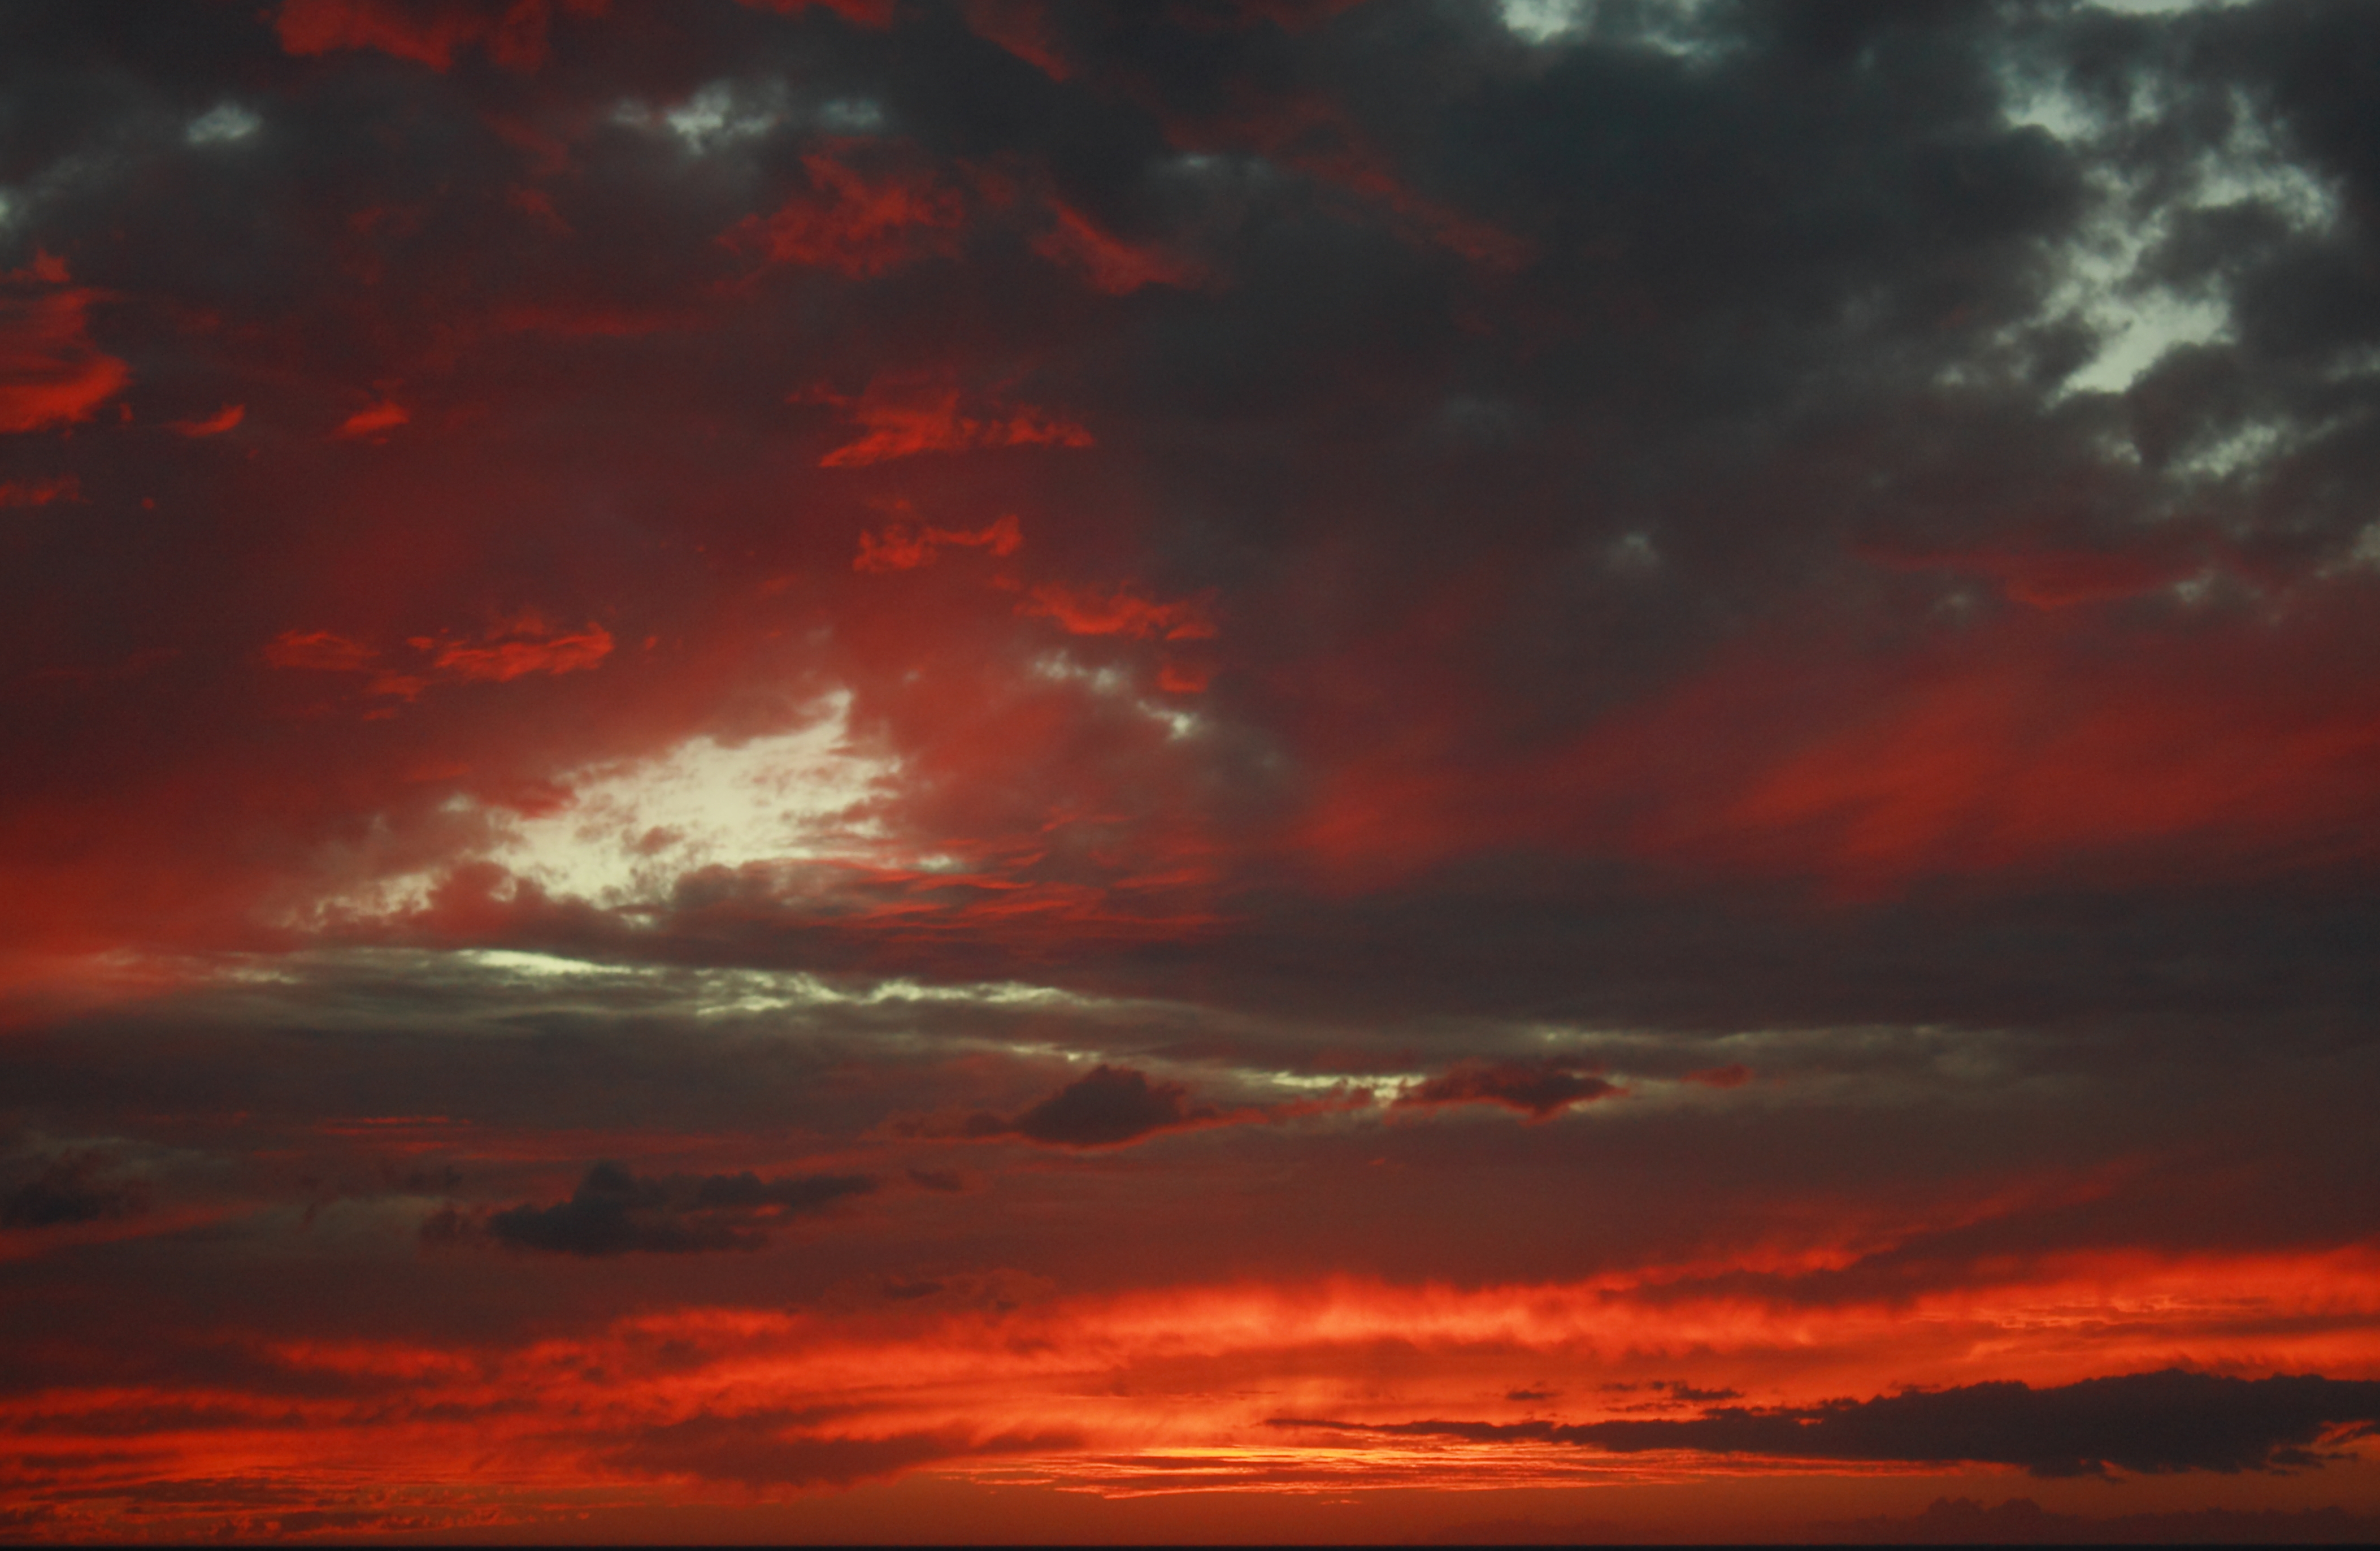 File:Kihei red sunset 1.jpg - Wikimedia Commons